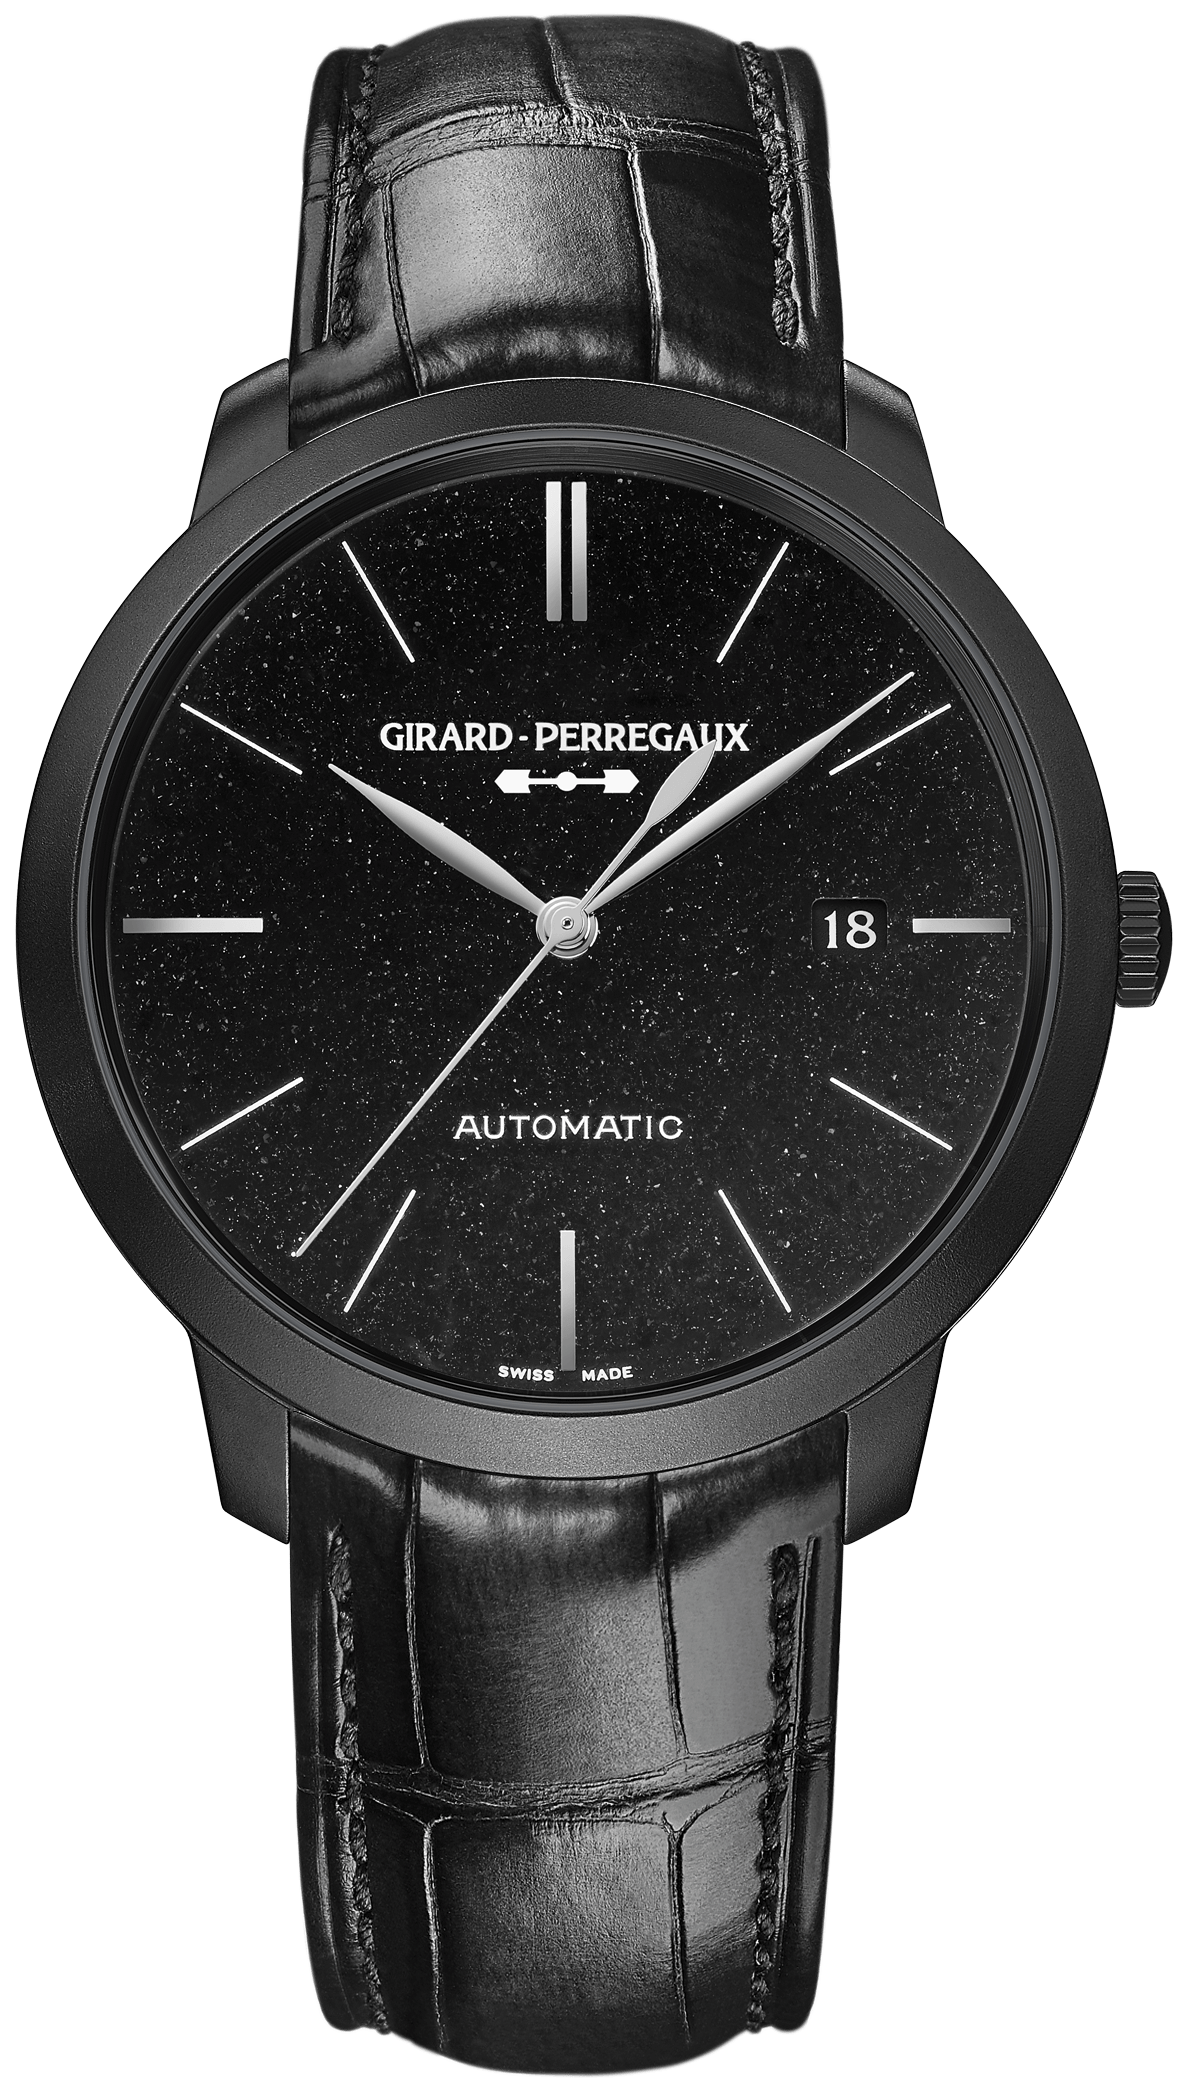 Girard-Perregaux 49555-11-631-BB6D (4955511631bb6d) - 1966 Orion